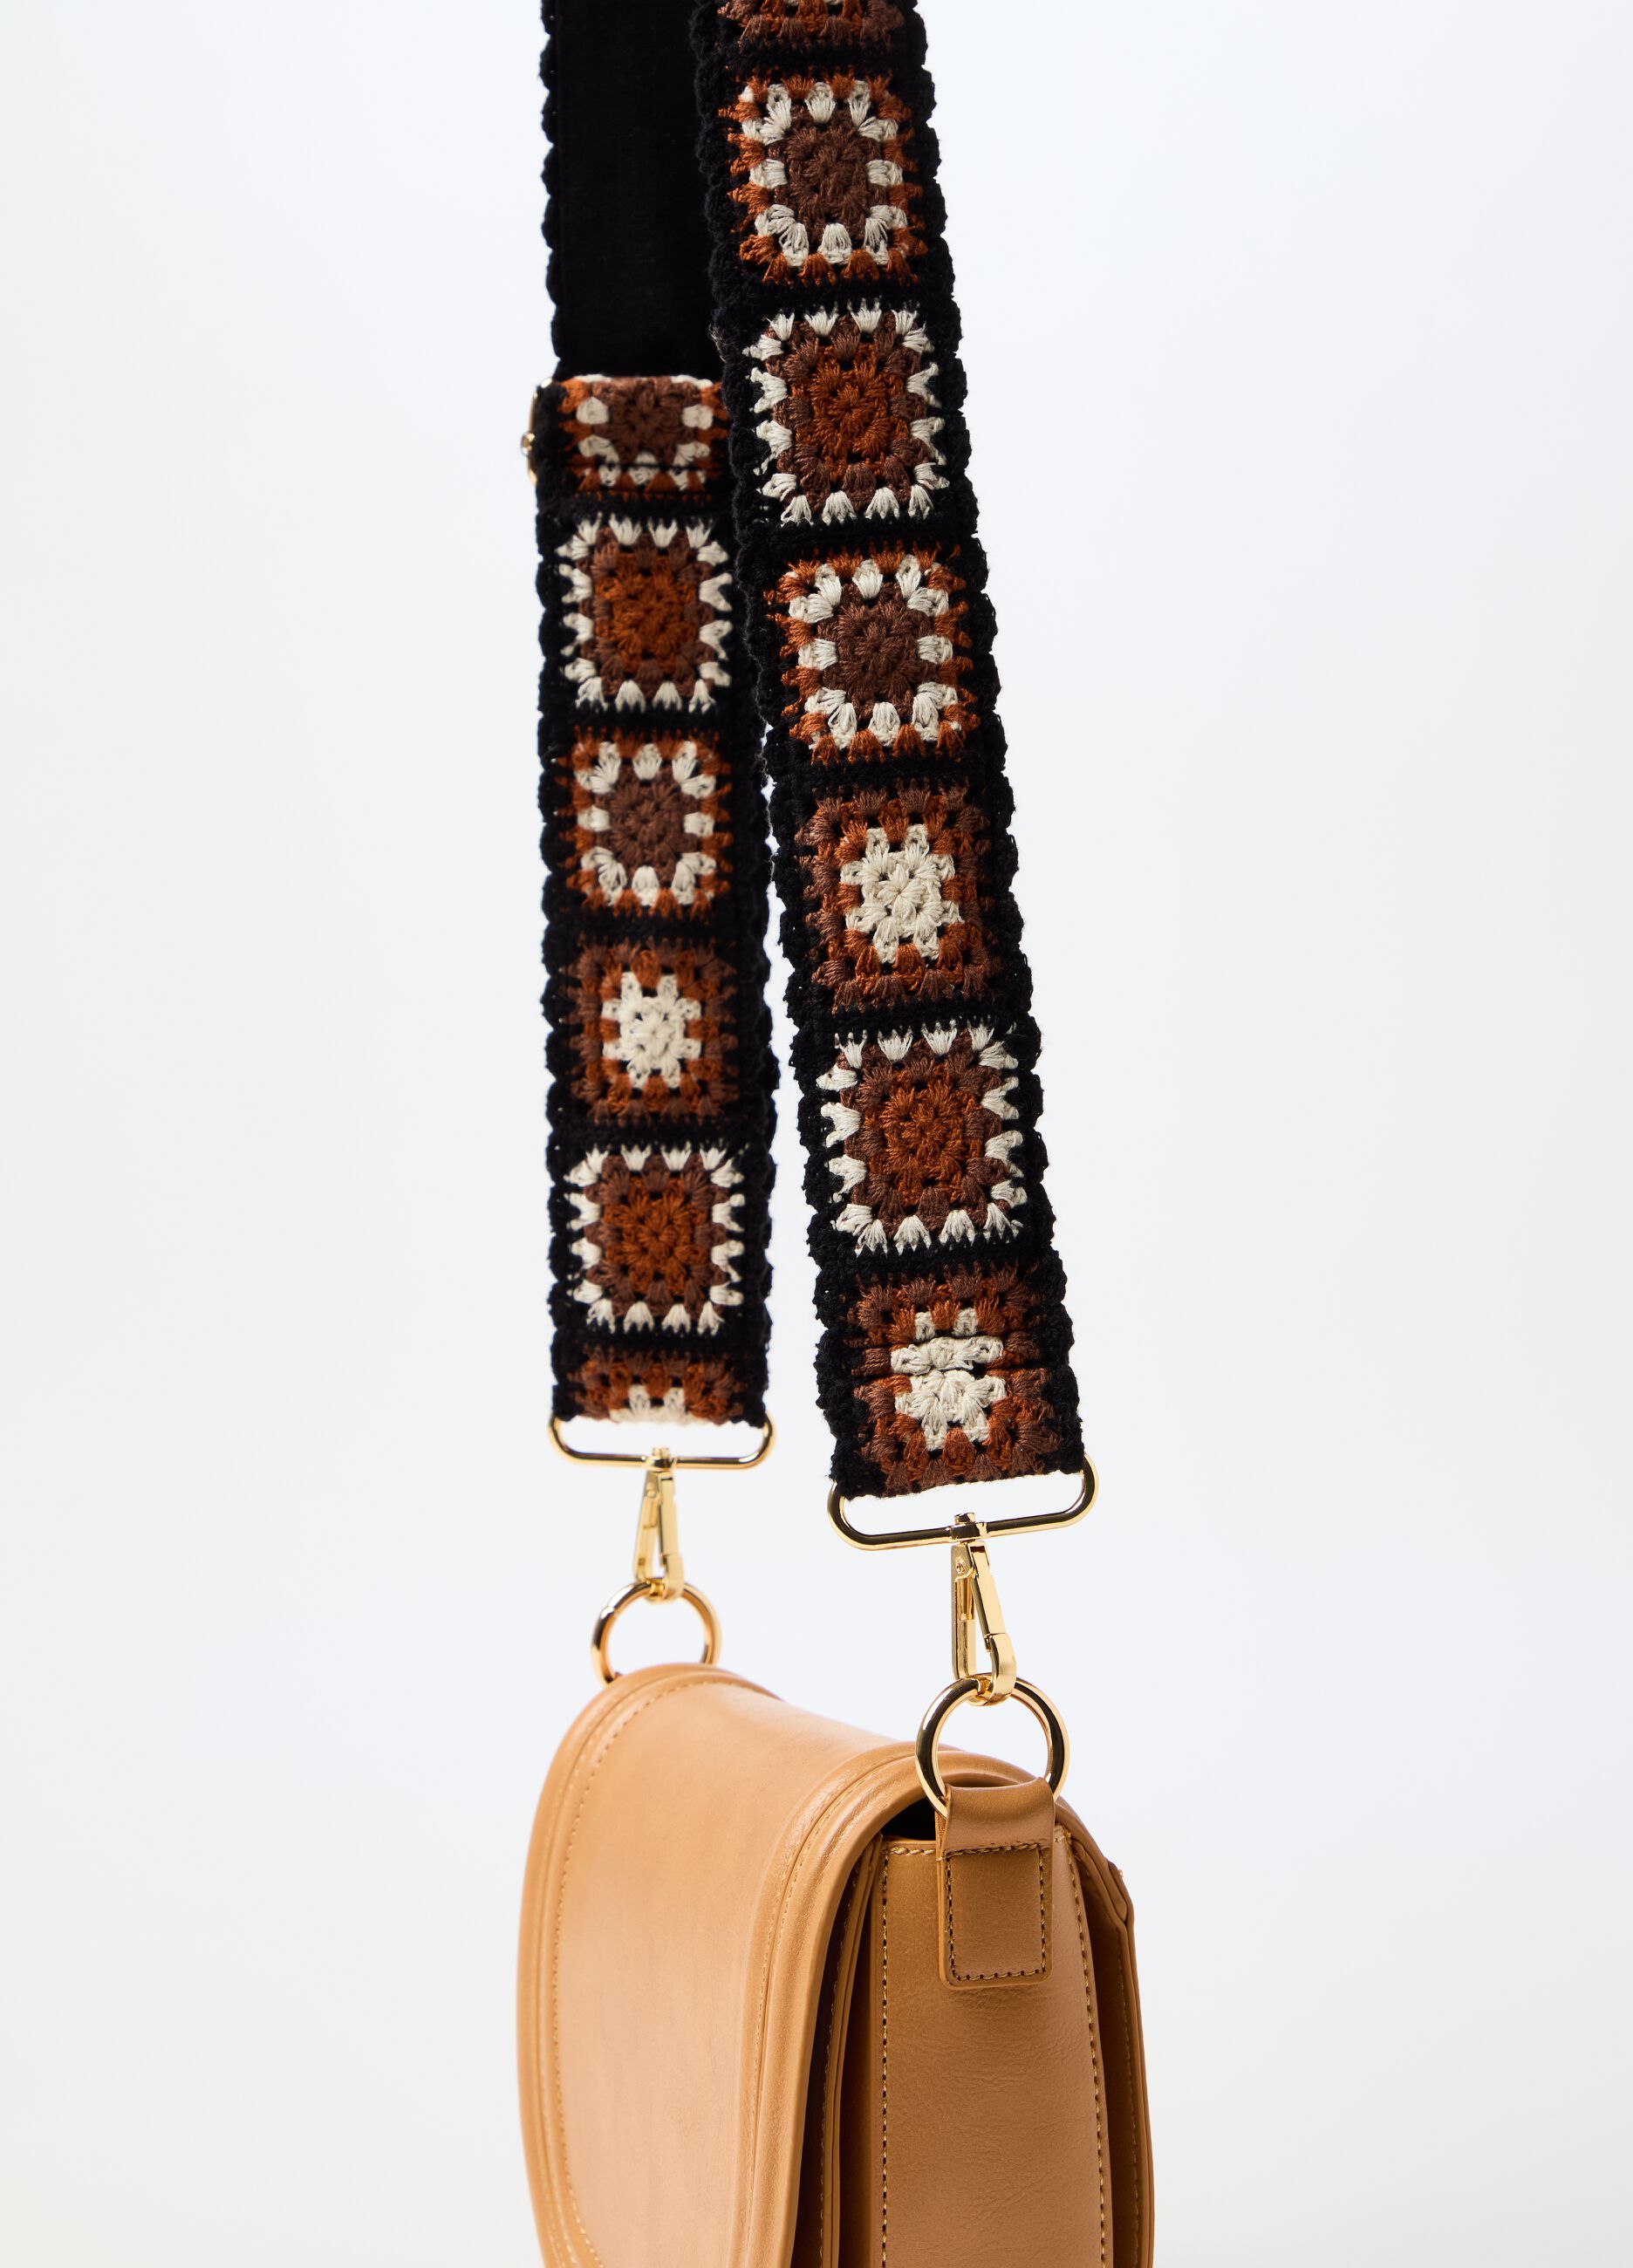 Shoulder strap for bag with crochet design